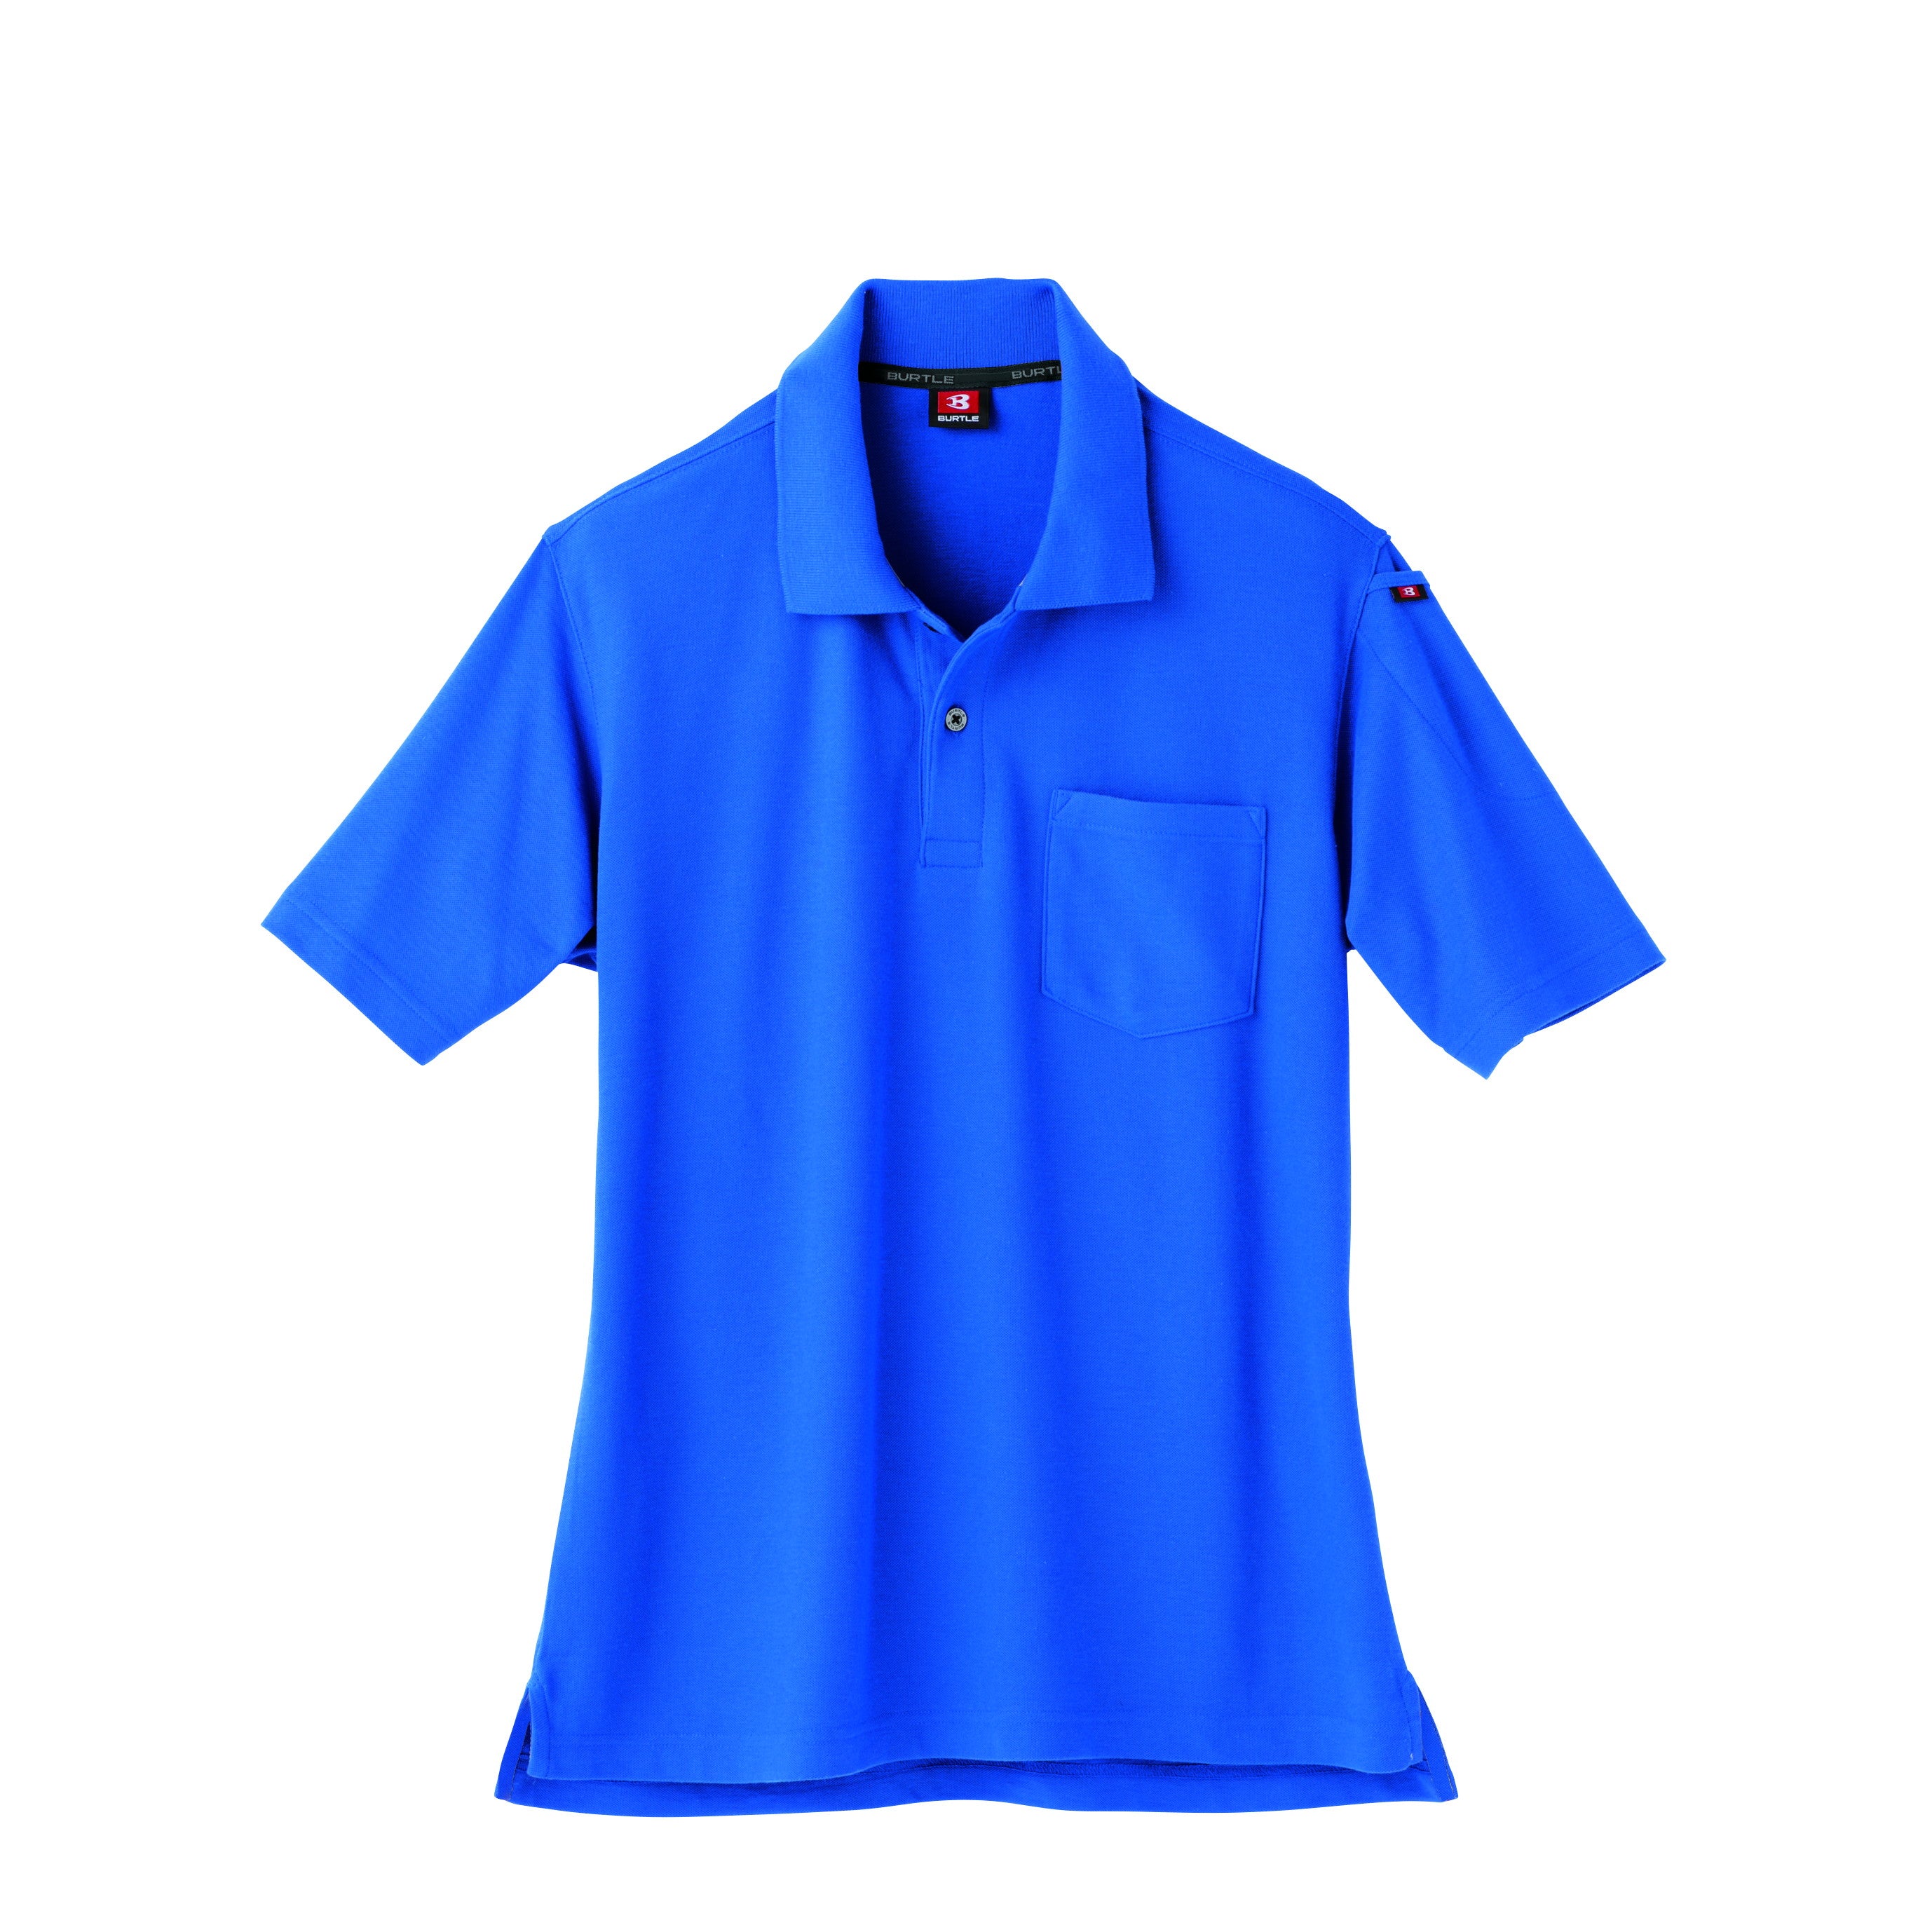 綿混紡によるナチュラルな着心地のポロシャツシリーズ　507半袖ポロシャツ 42ロイヤルブルー / S